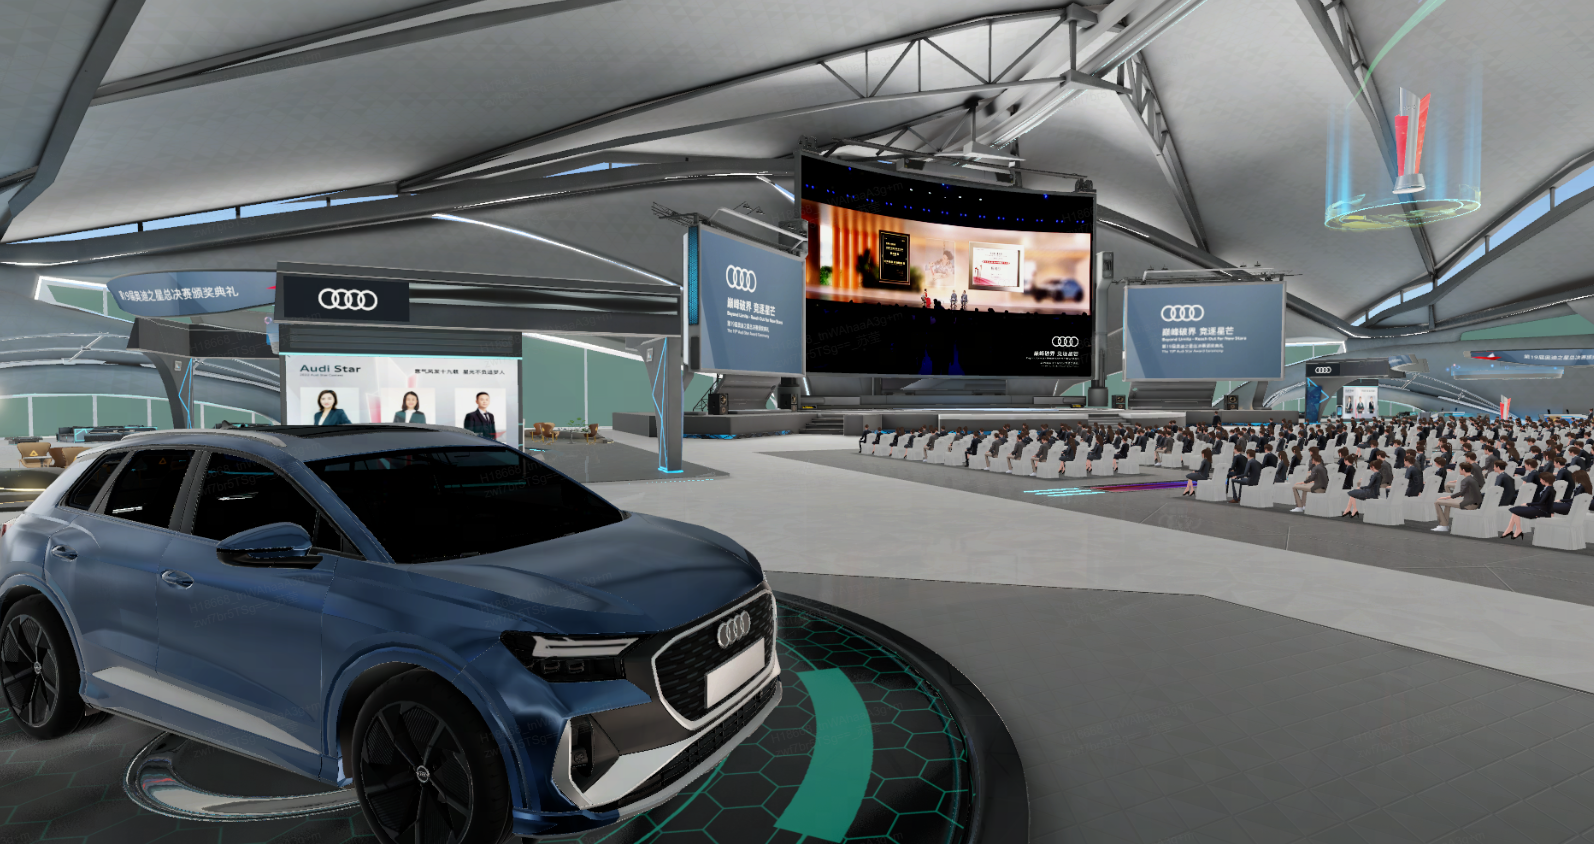 这是一张室内活动场地的图片，中心展示着一辆蓝色奥迪汽车，背景有大屏幕和观众席，环境现代科技感强。